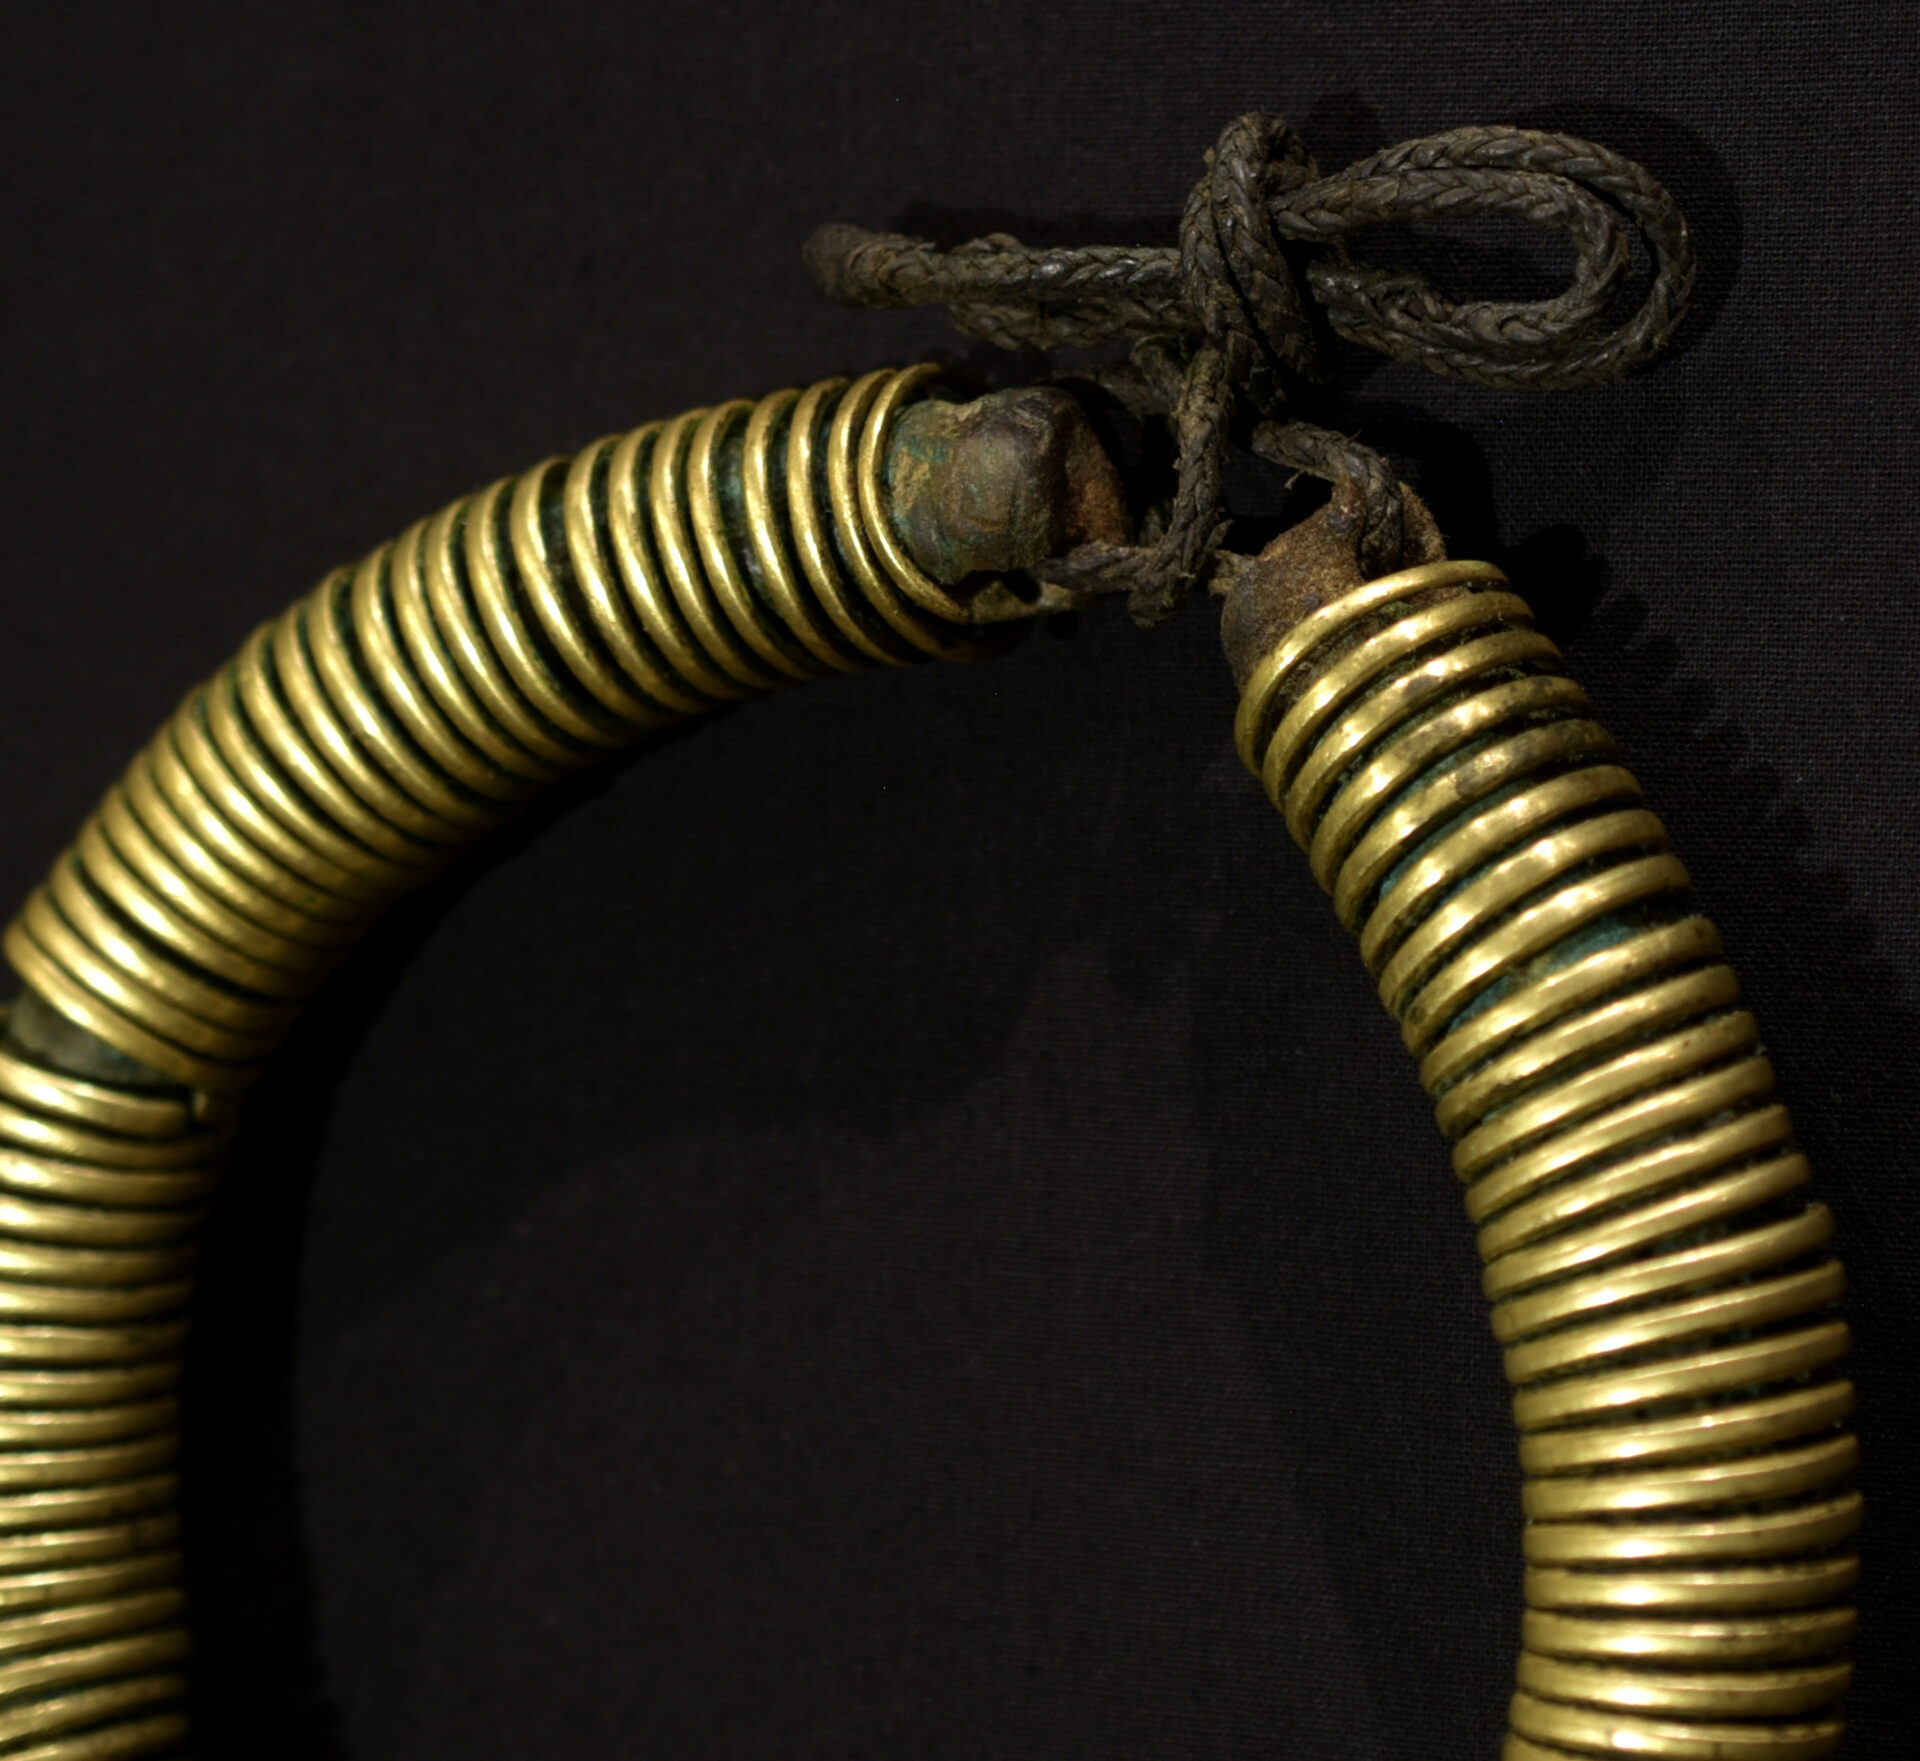 Old Fine Arsi Oromo Necklace – Ethiopia – Rare Item